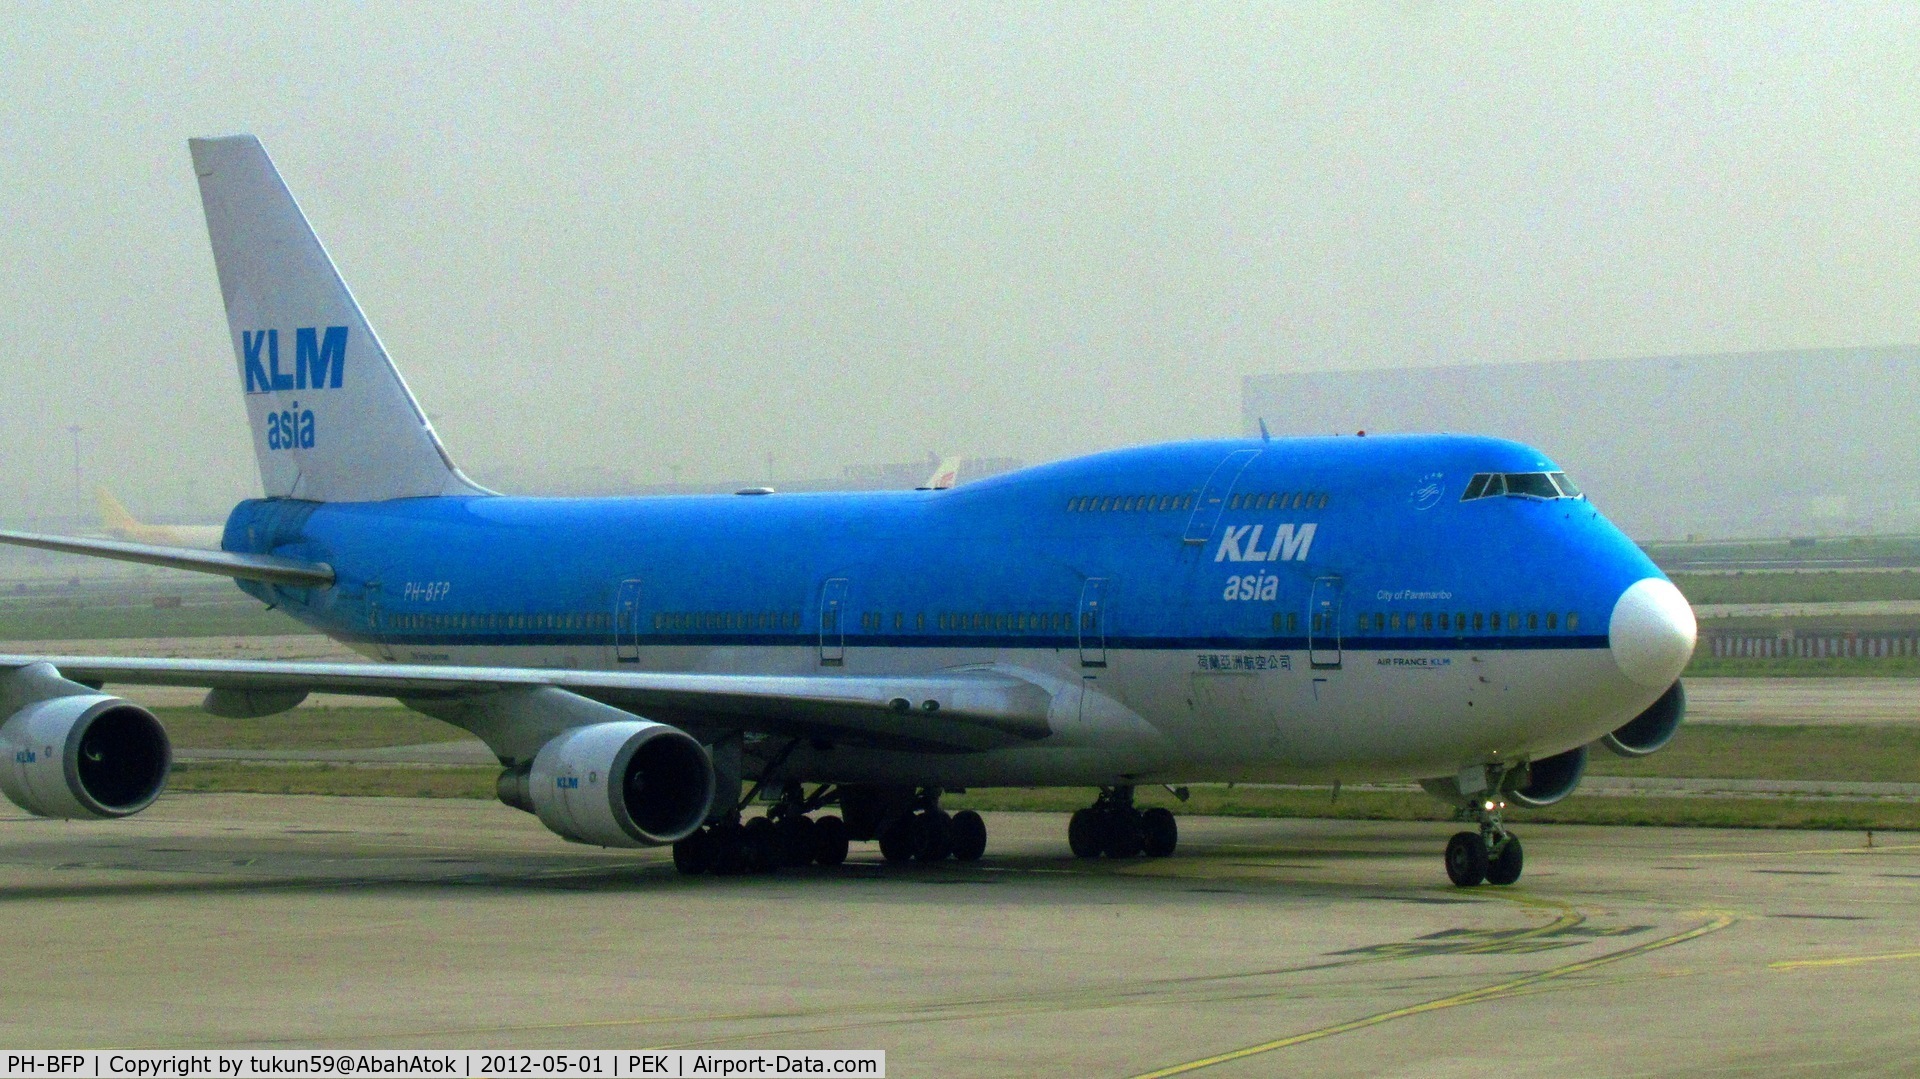 PH-BFP, 1993 Boeing 747-406BC C/N 26374, KLM Asia